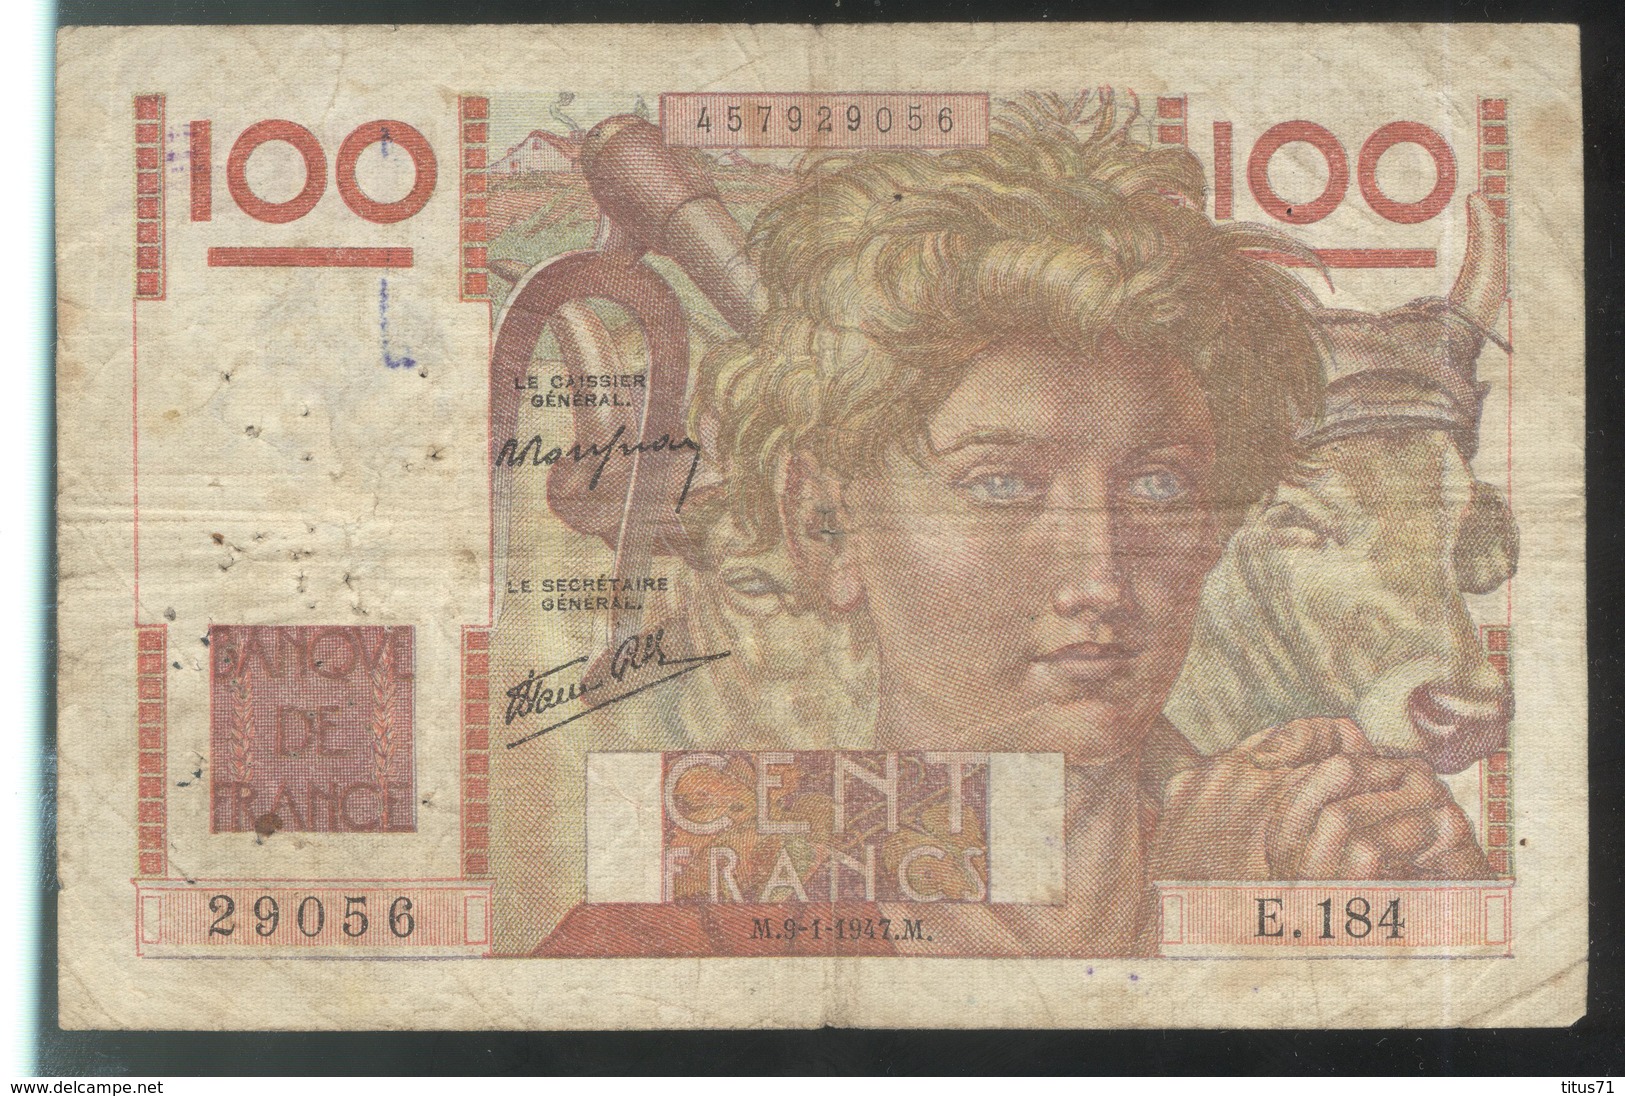 Billet 100 Francs France Jeune Paysan 9-1-1947 M Etat Moyen - 100 F 1945-1954 ''Jeune Paysan''